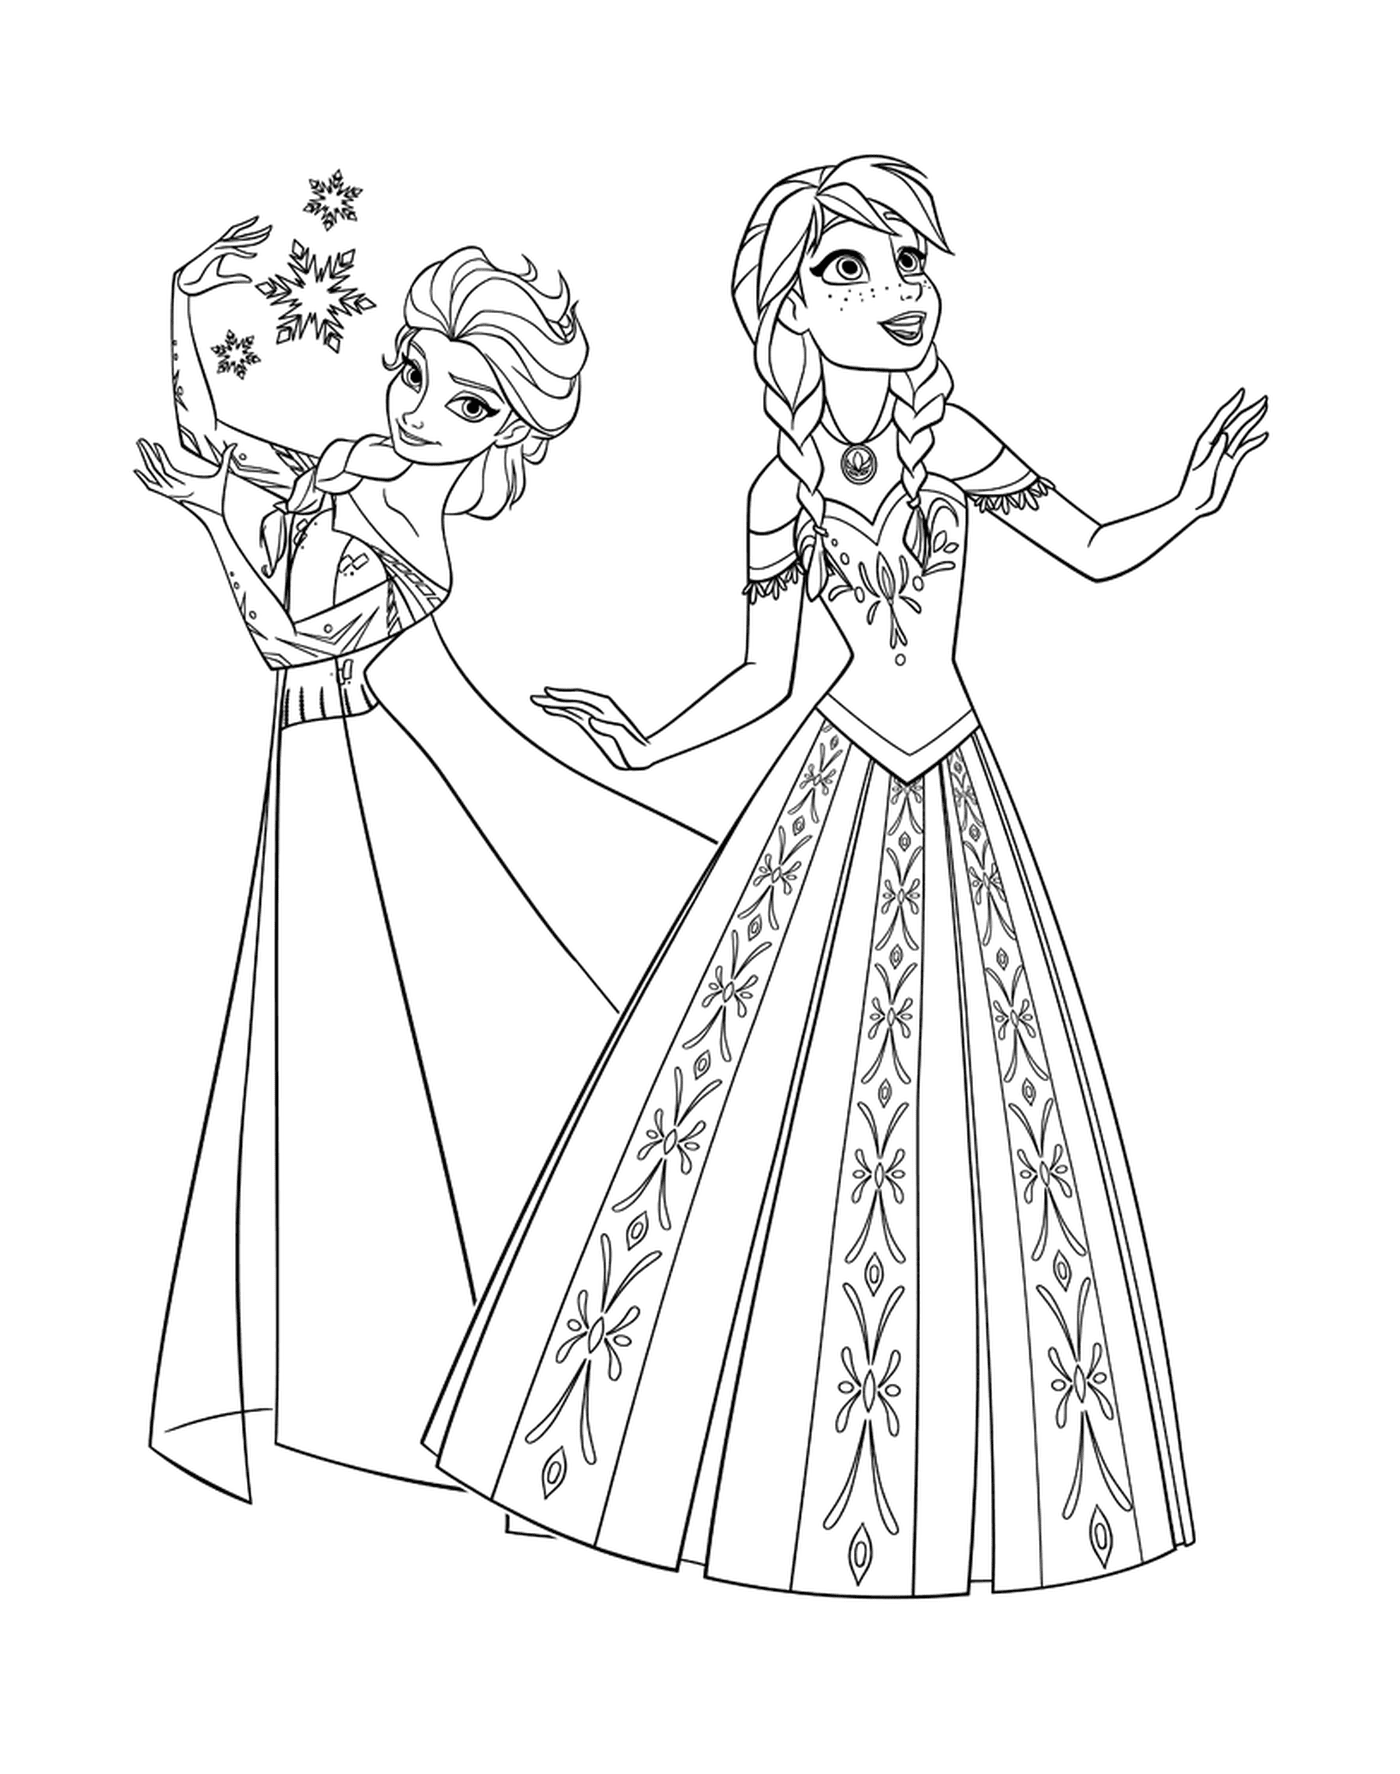  Anna und Elsa, Prinzessinnen der Schneekönigin 